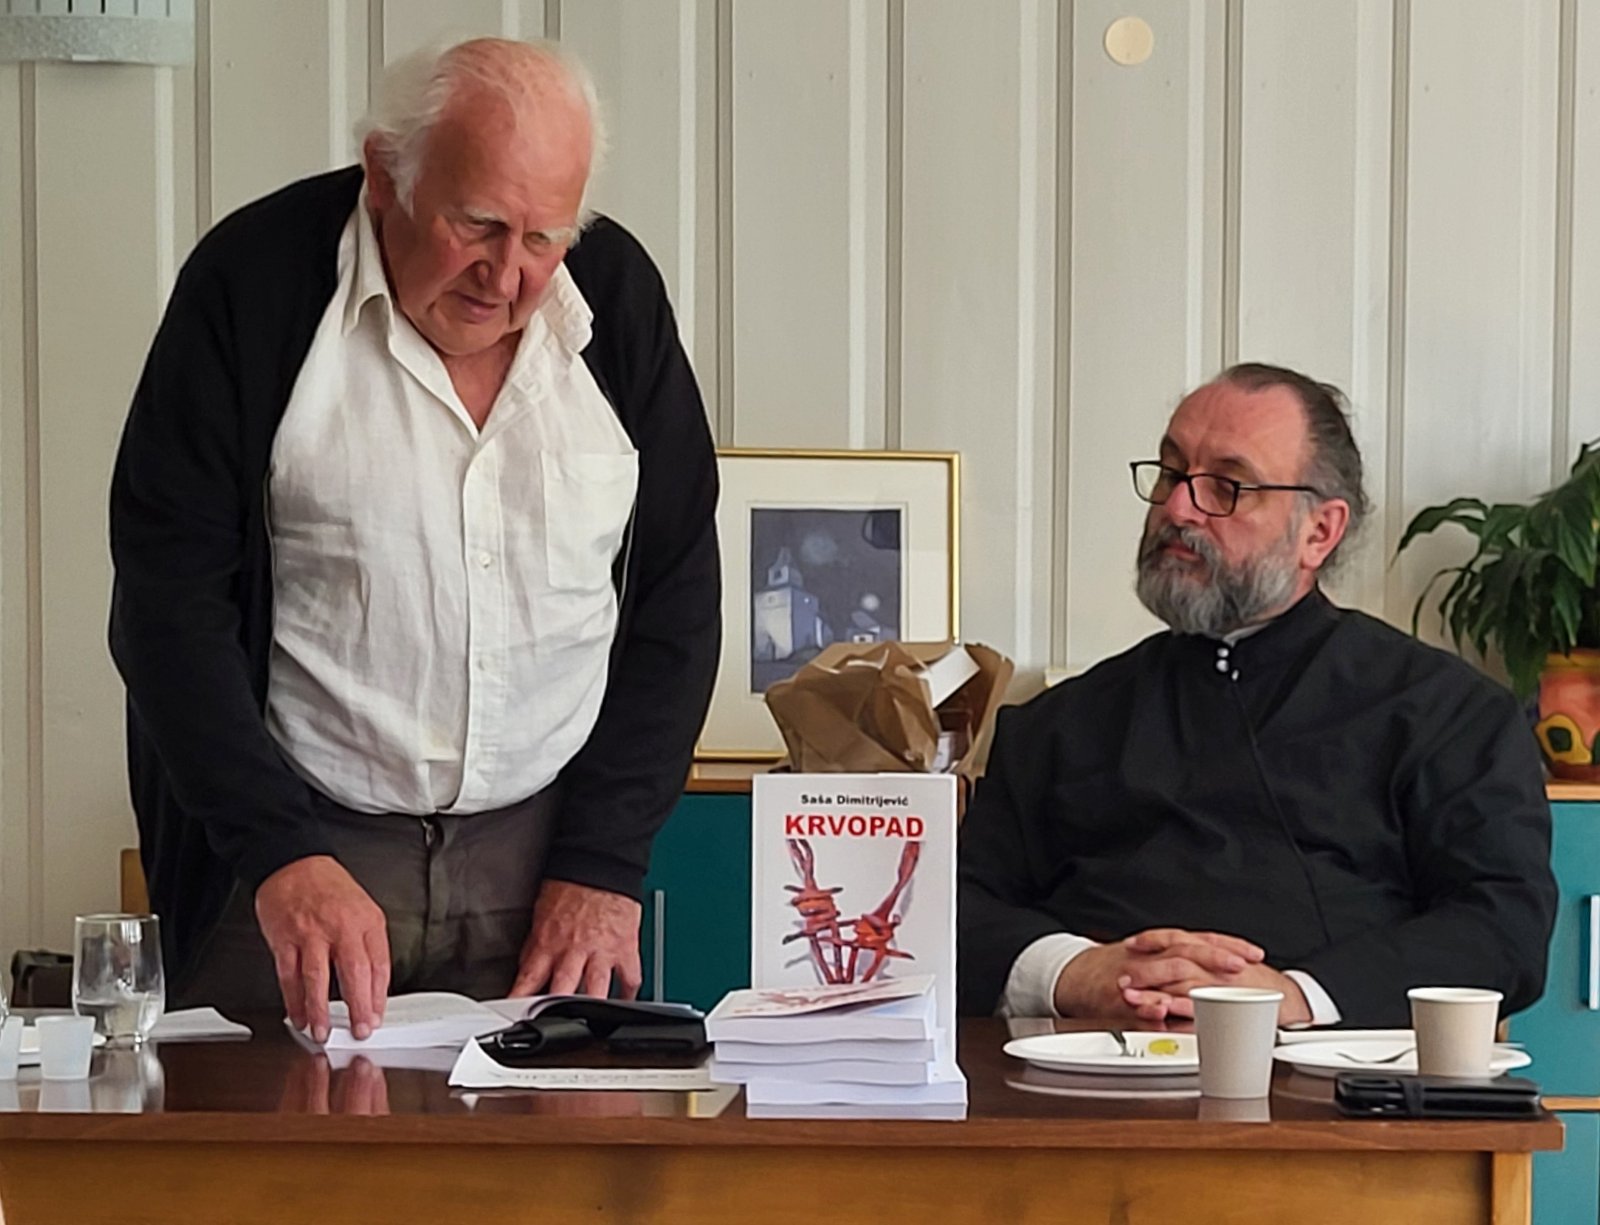 Održana promocija knjige Krvopad Saše Dimitrijevića u Tonsbergu